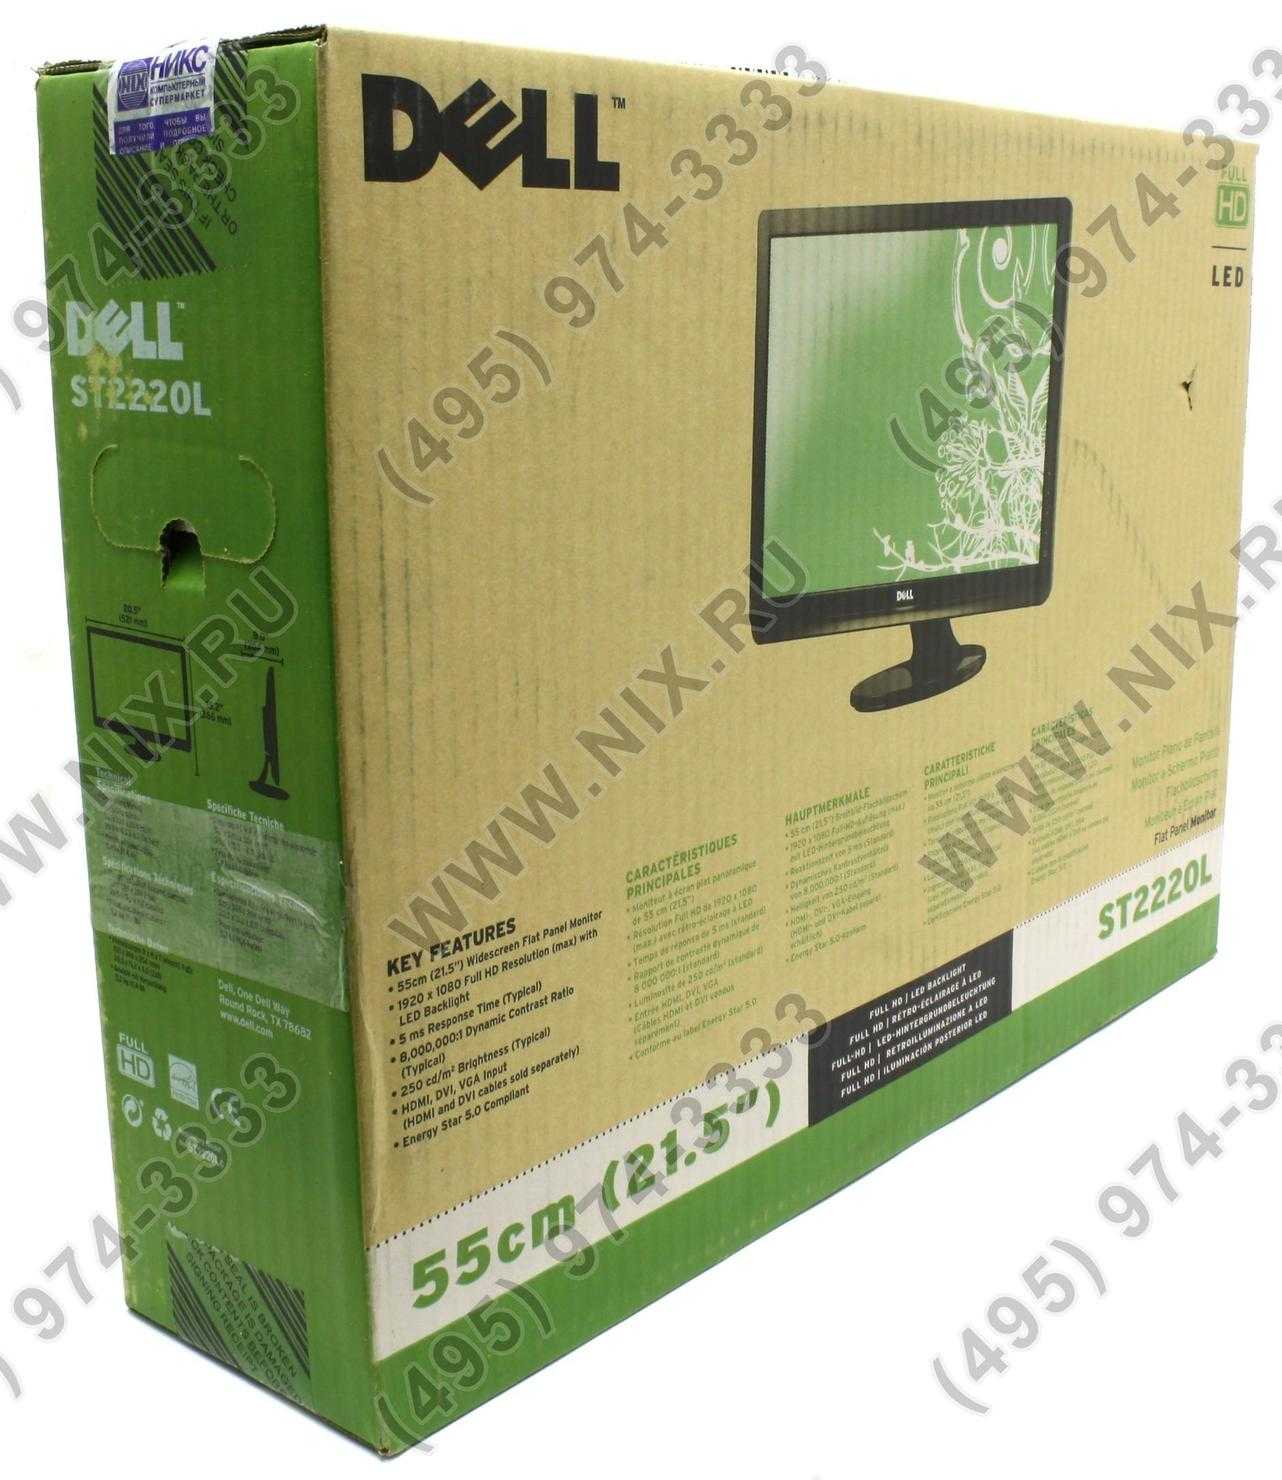 Жк монитор 24" dell st2420l — купить, цена и характеристики, отзывы